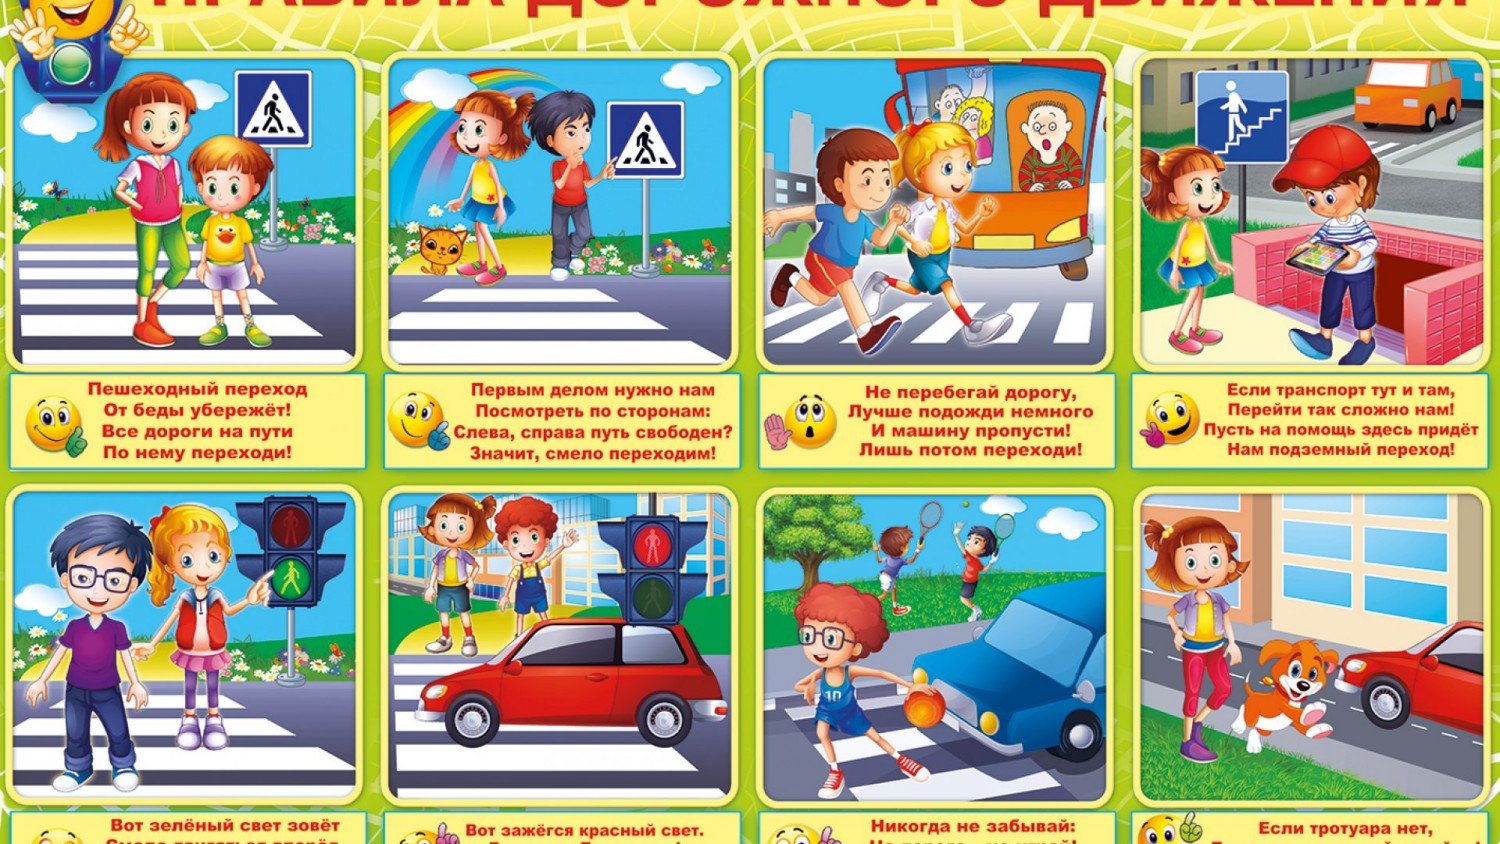 Поведение школьников на дороге. ПДД для детей. Правила дорожного движения картинки. Правил дорожного движения для детей. ПДД картинки для детей.